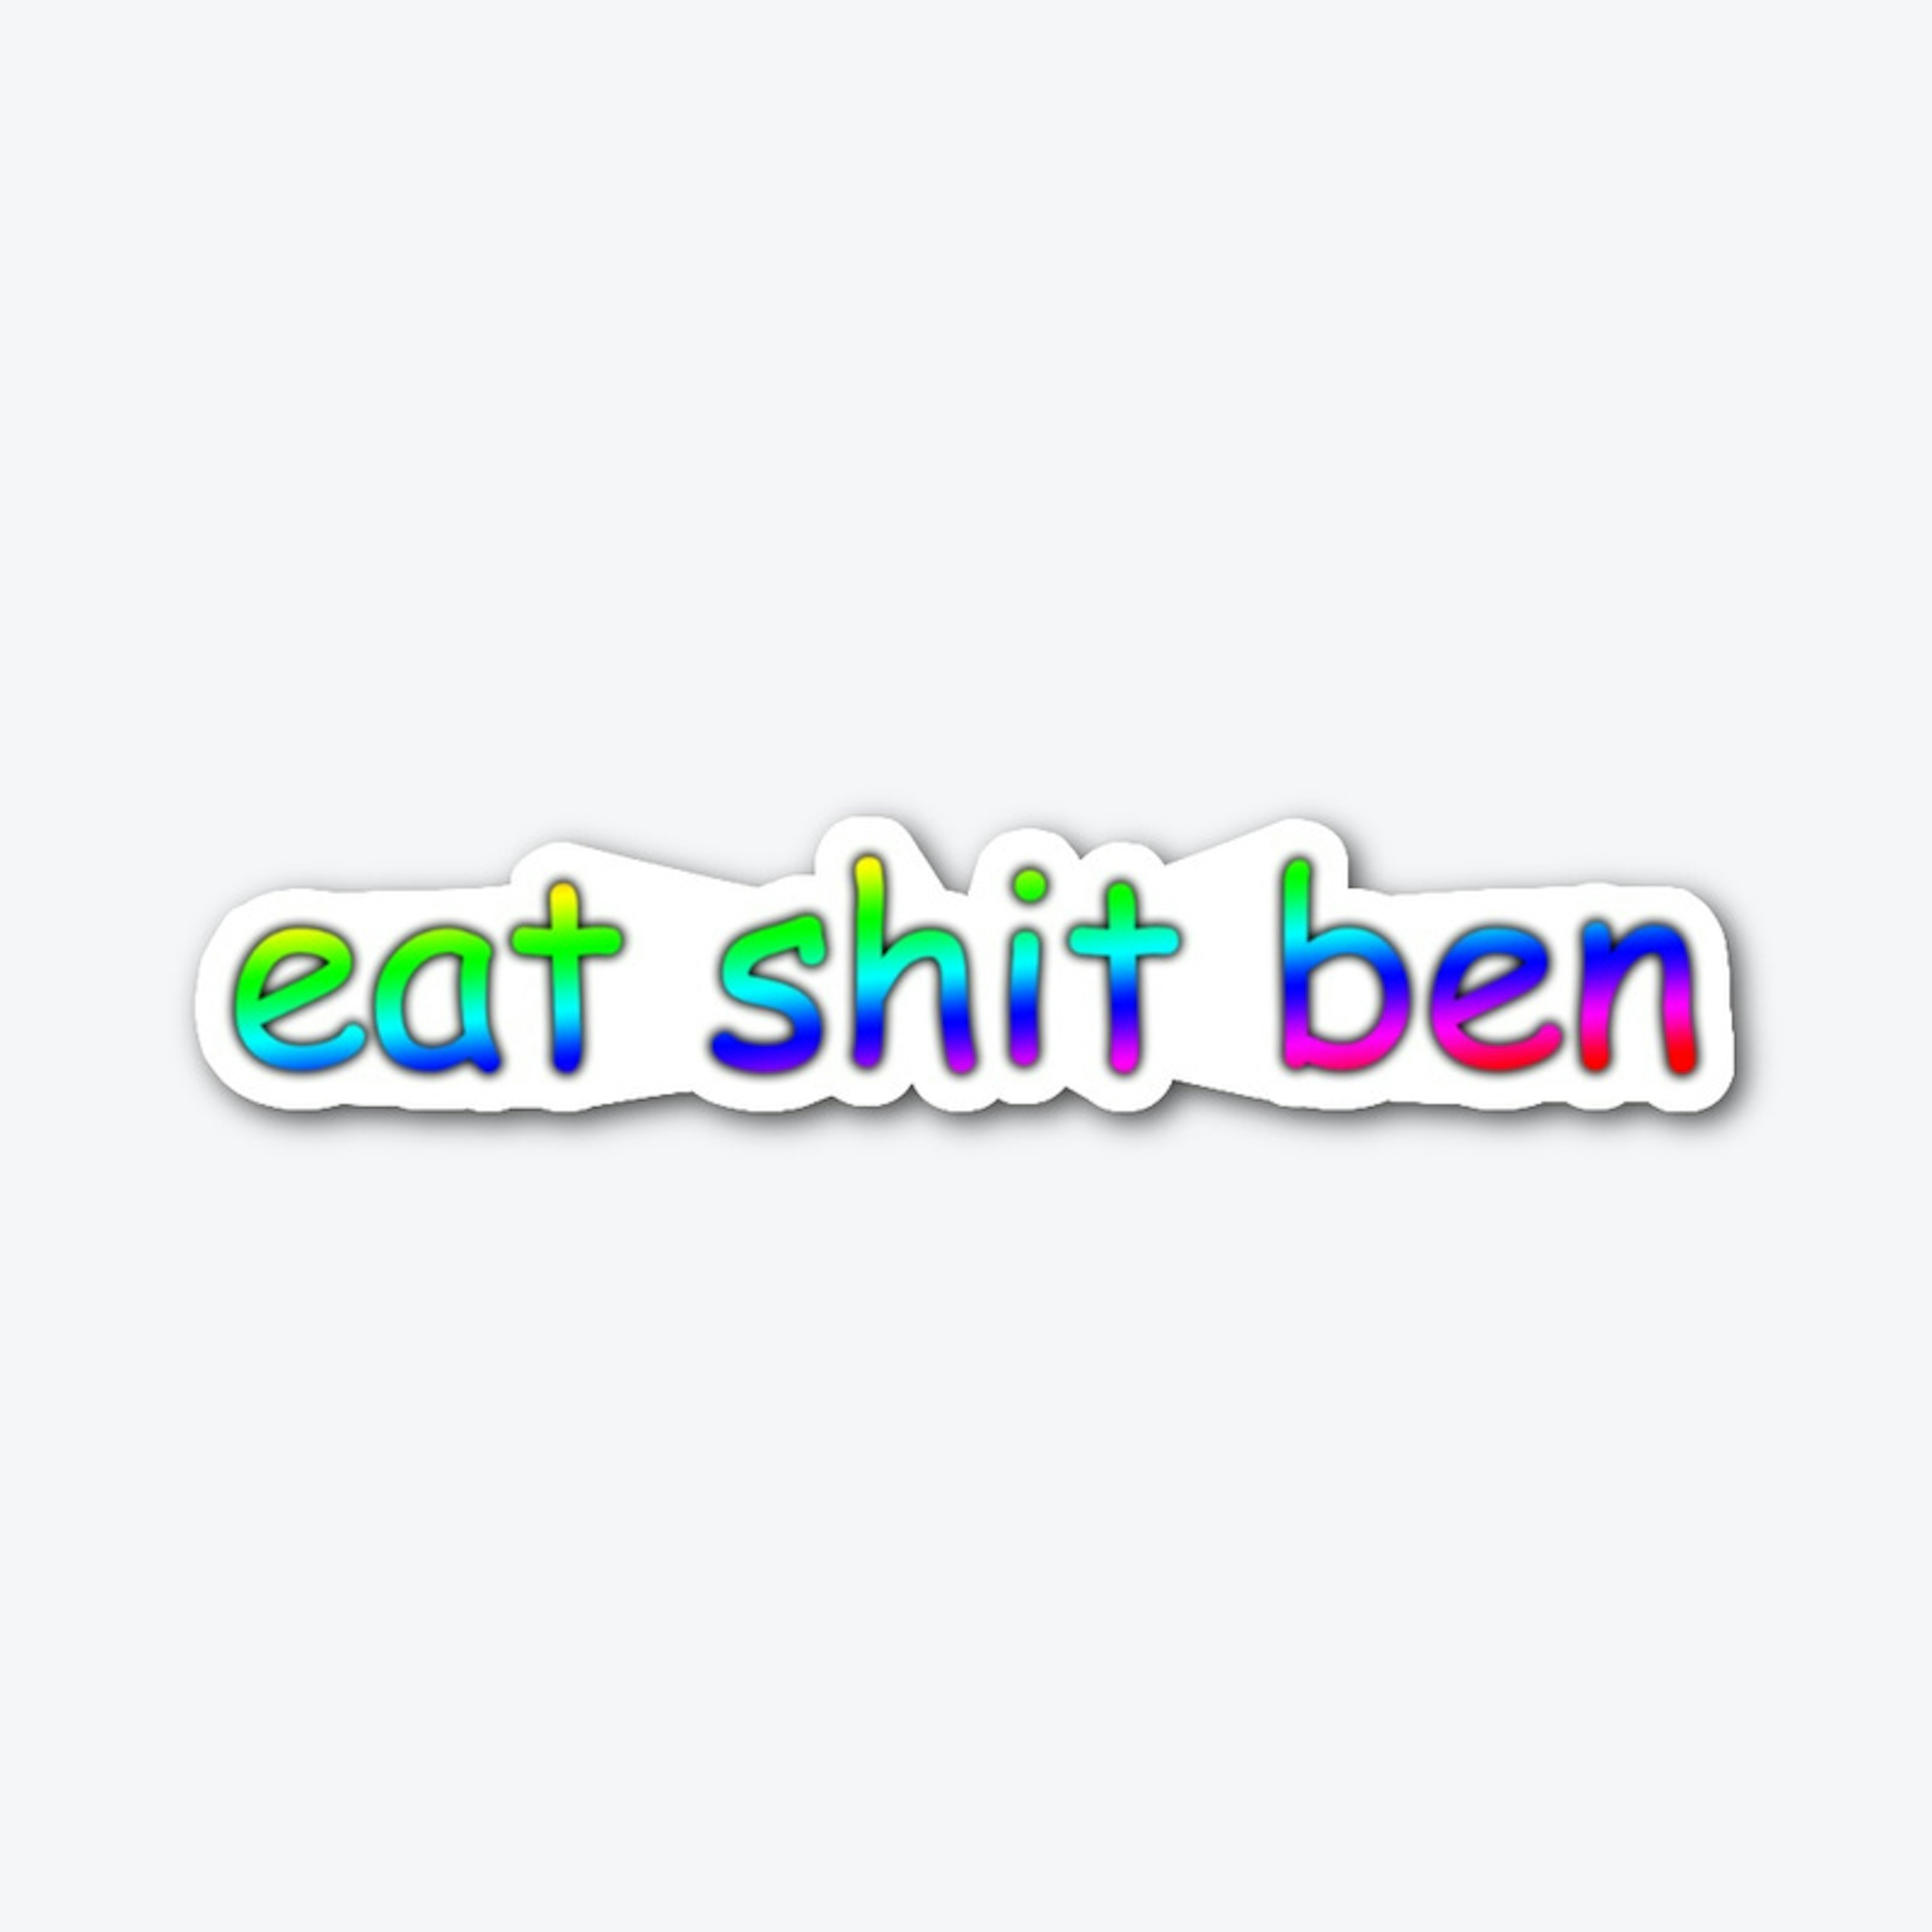 the ben sticker